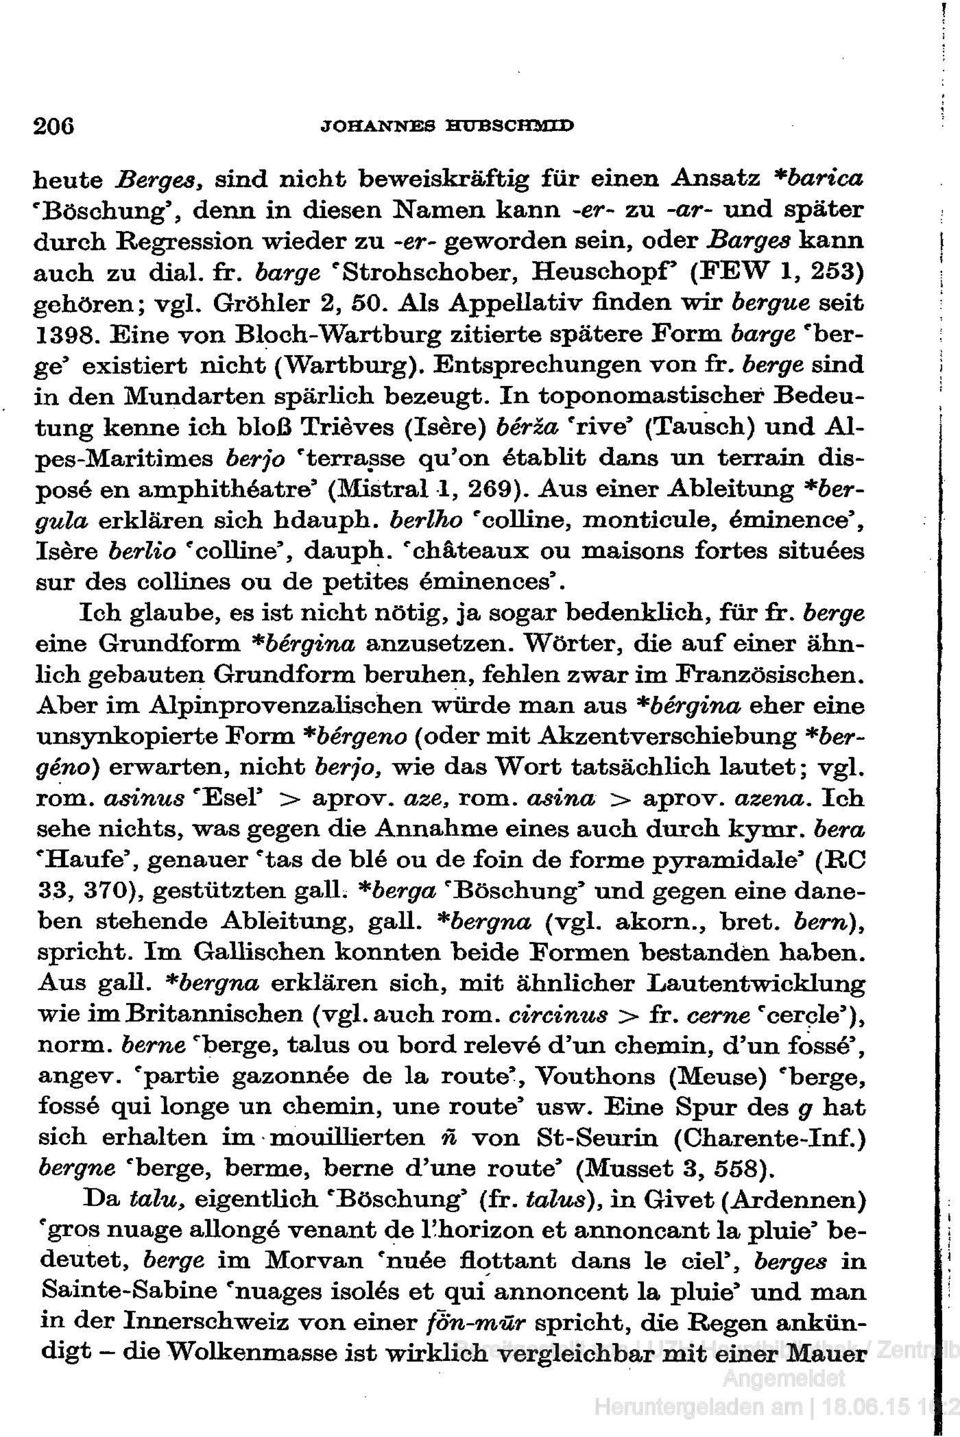 Eine von Bloch-Wartburg zitierte spätere Form bärge 'berge' existiert nicht (Wartburg). Entsprechungen von fr. berge sind in den Mundarten spärlich bezeugt.